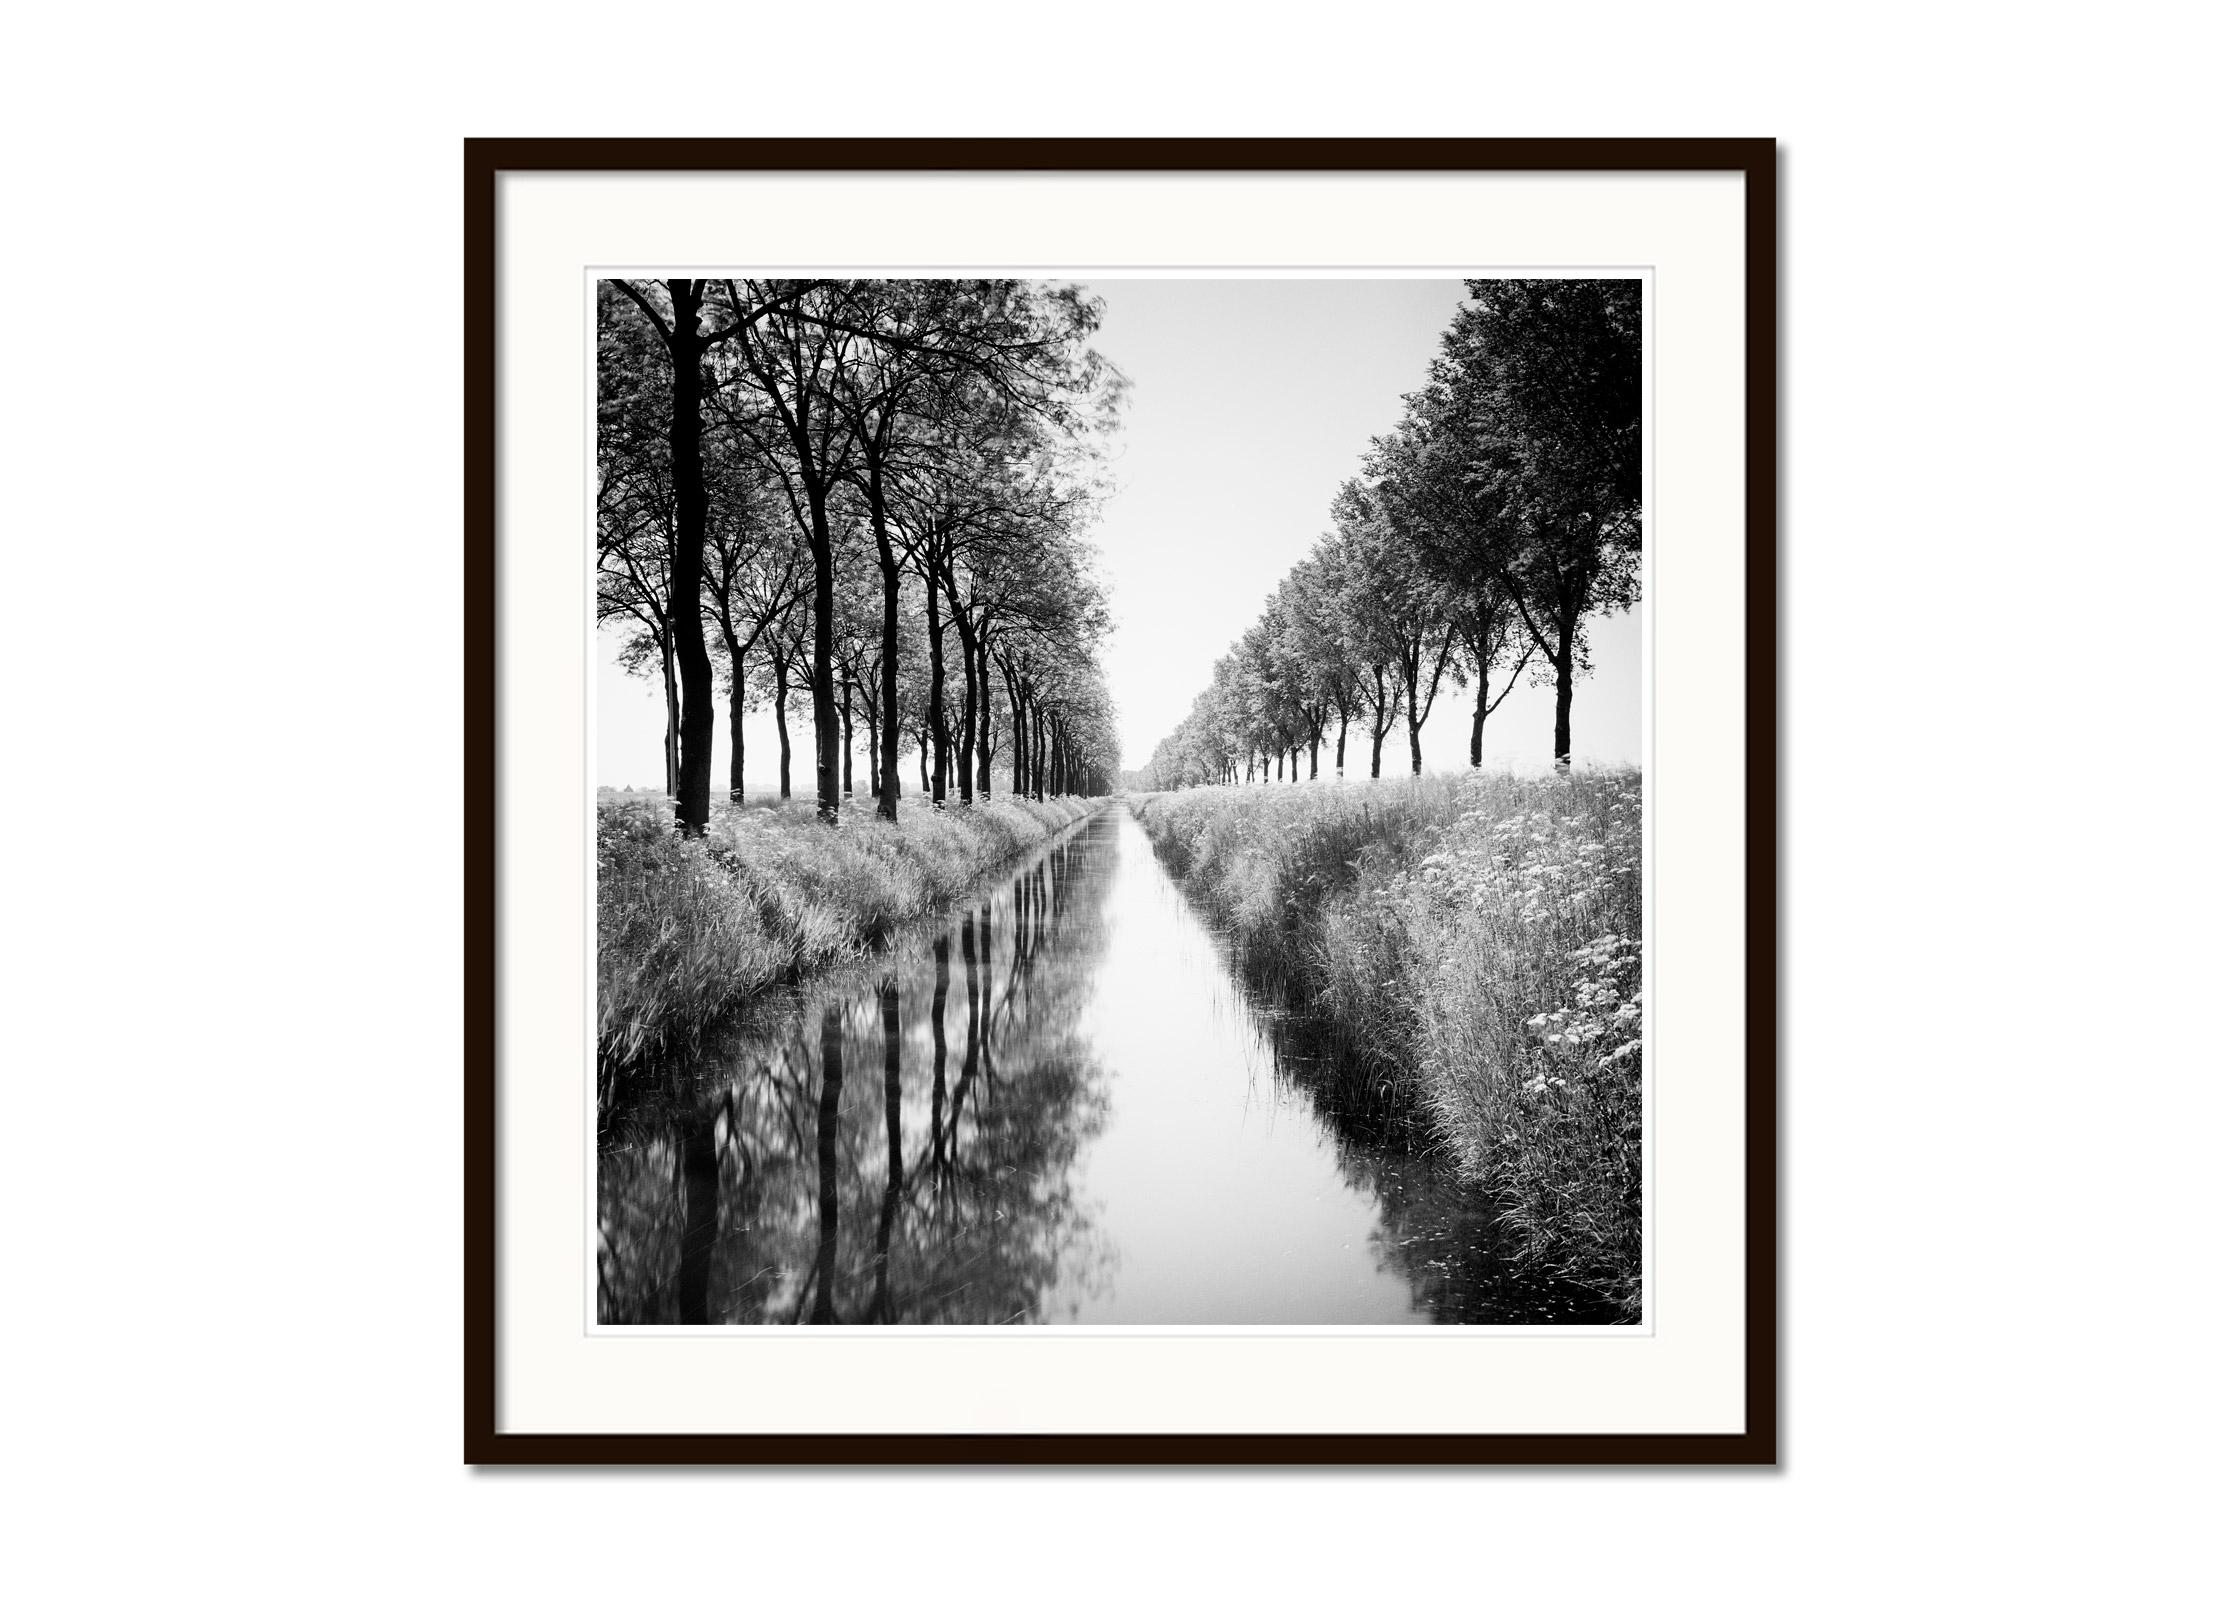 Black and White Fine Art Waterscape Photography - Allee von Bäumen an einem Wassergraben mit Reflexionen im ruhigen Wasser. Pigmenttintendruck, Auflage 7, signiert, betitelt, datiert und nummeriert vom Künstler. Mit Echtheitszertifikat. Bedruckt mit